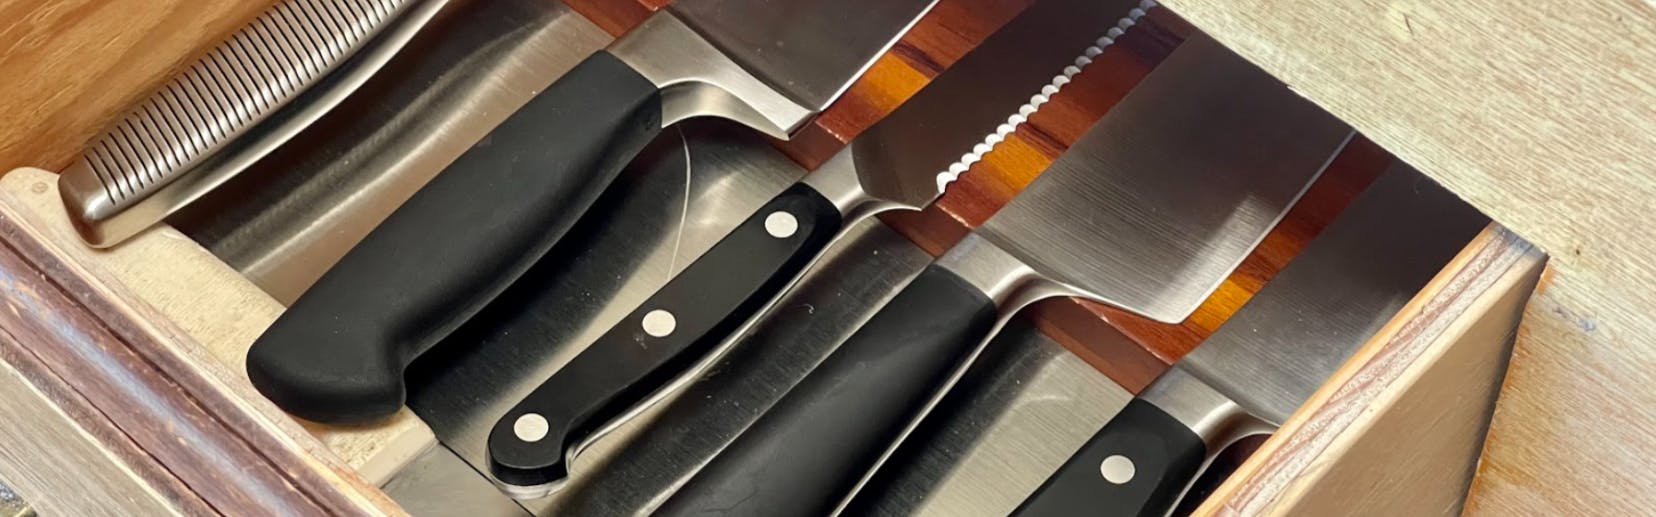 Expert Review: Mercer ZUM 8-in Chef's Knife